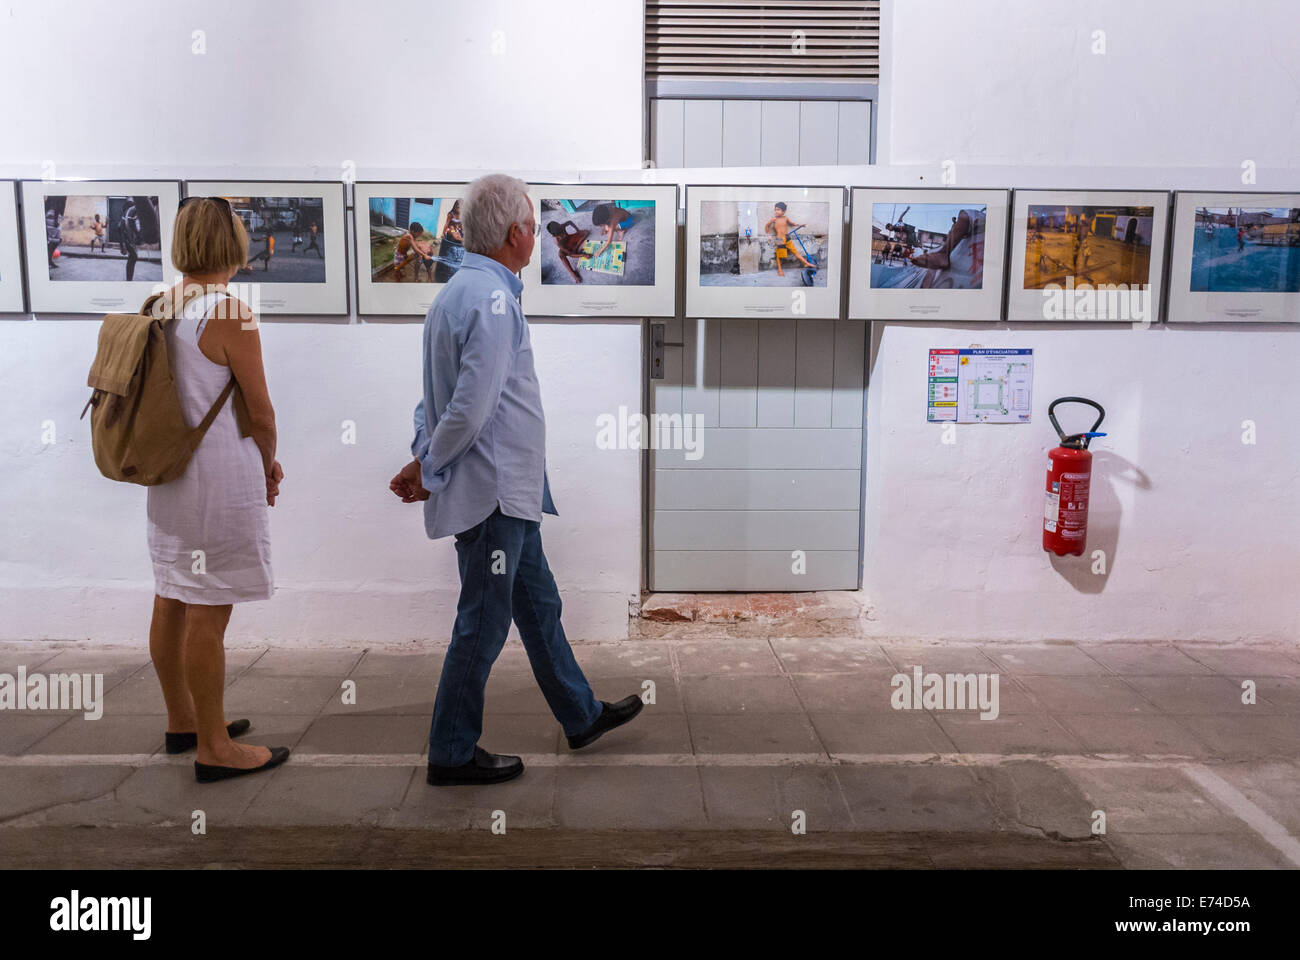 Perpignan, France, de touristes en 'Visa pour l'image' Festival de photojournalisme Exposition Galerie de Photographie Banque D'Images